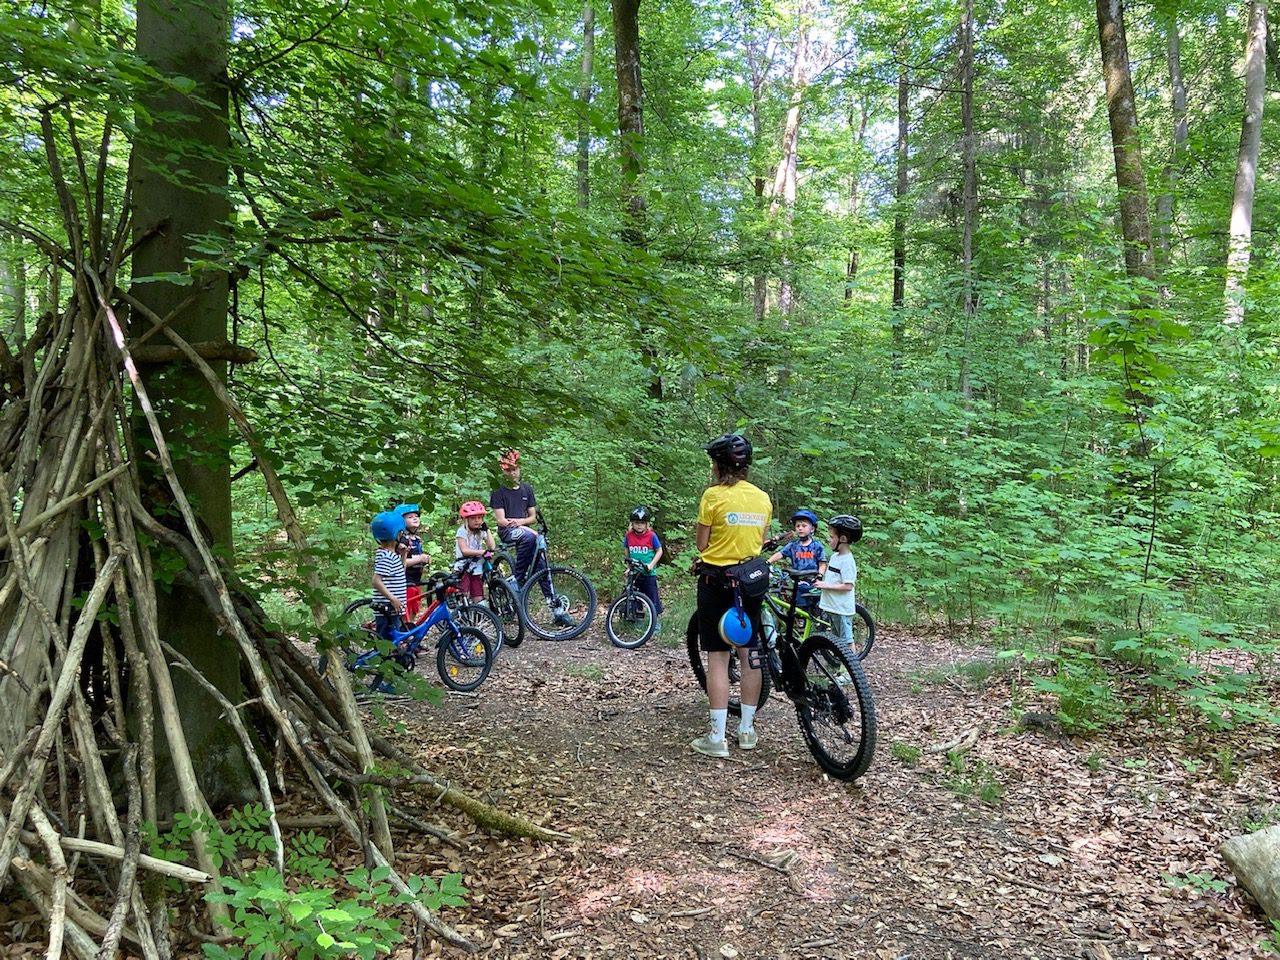 Lechrider - Mountainbike Kurse für Kinder